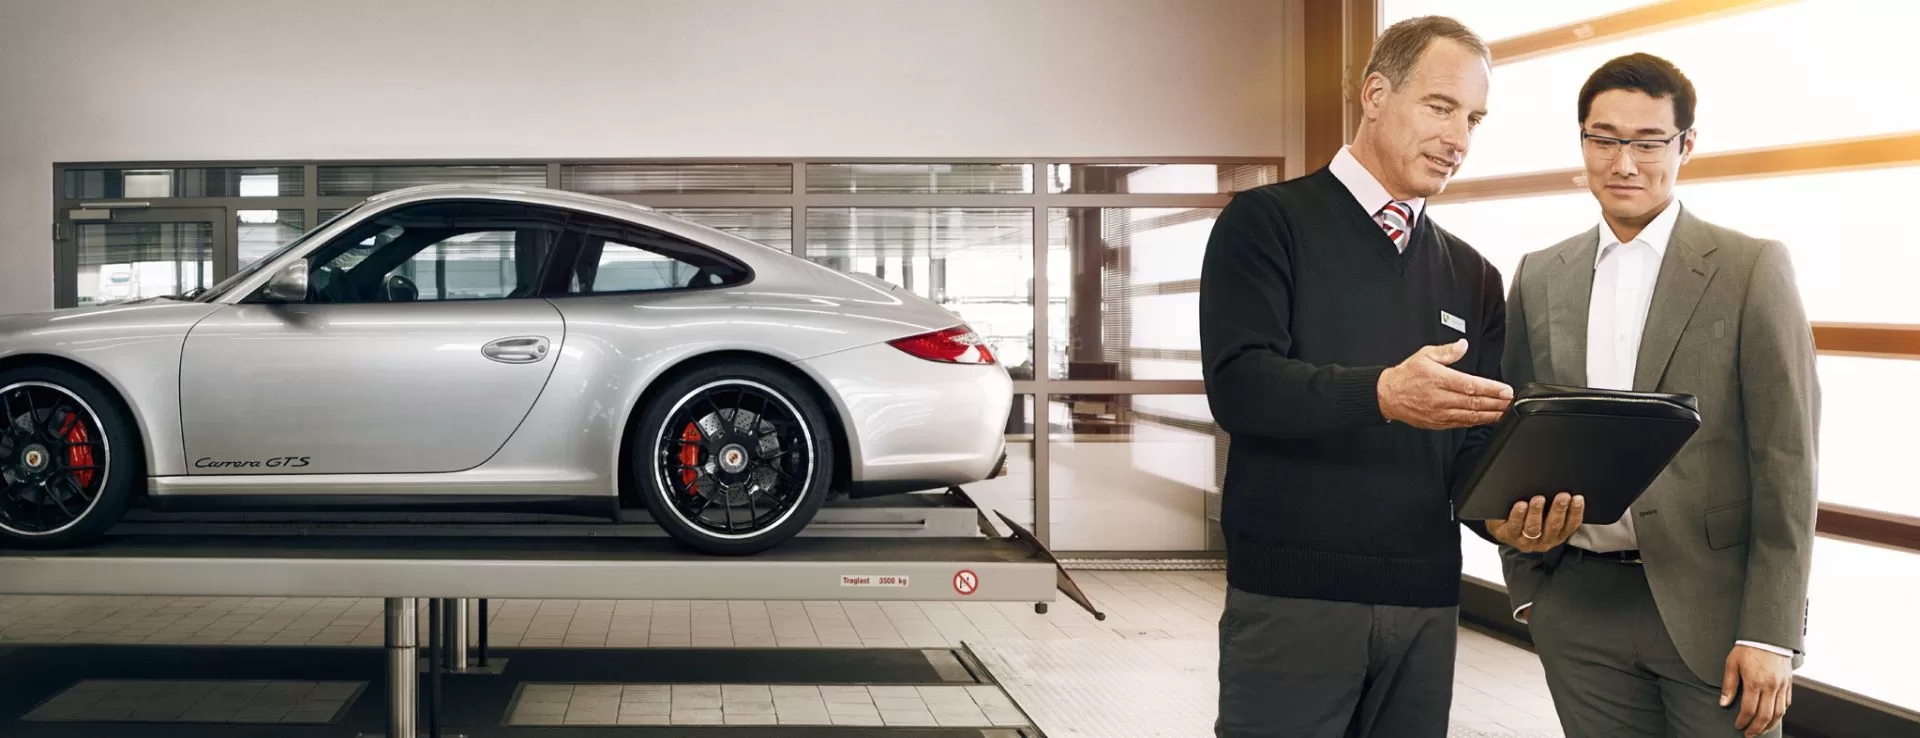 Повысьте оценочную стоимость Вашего Porsche!